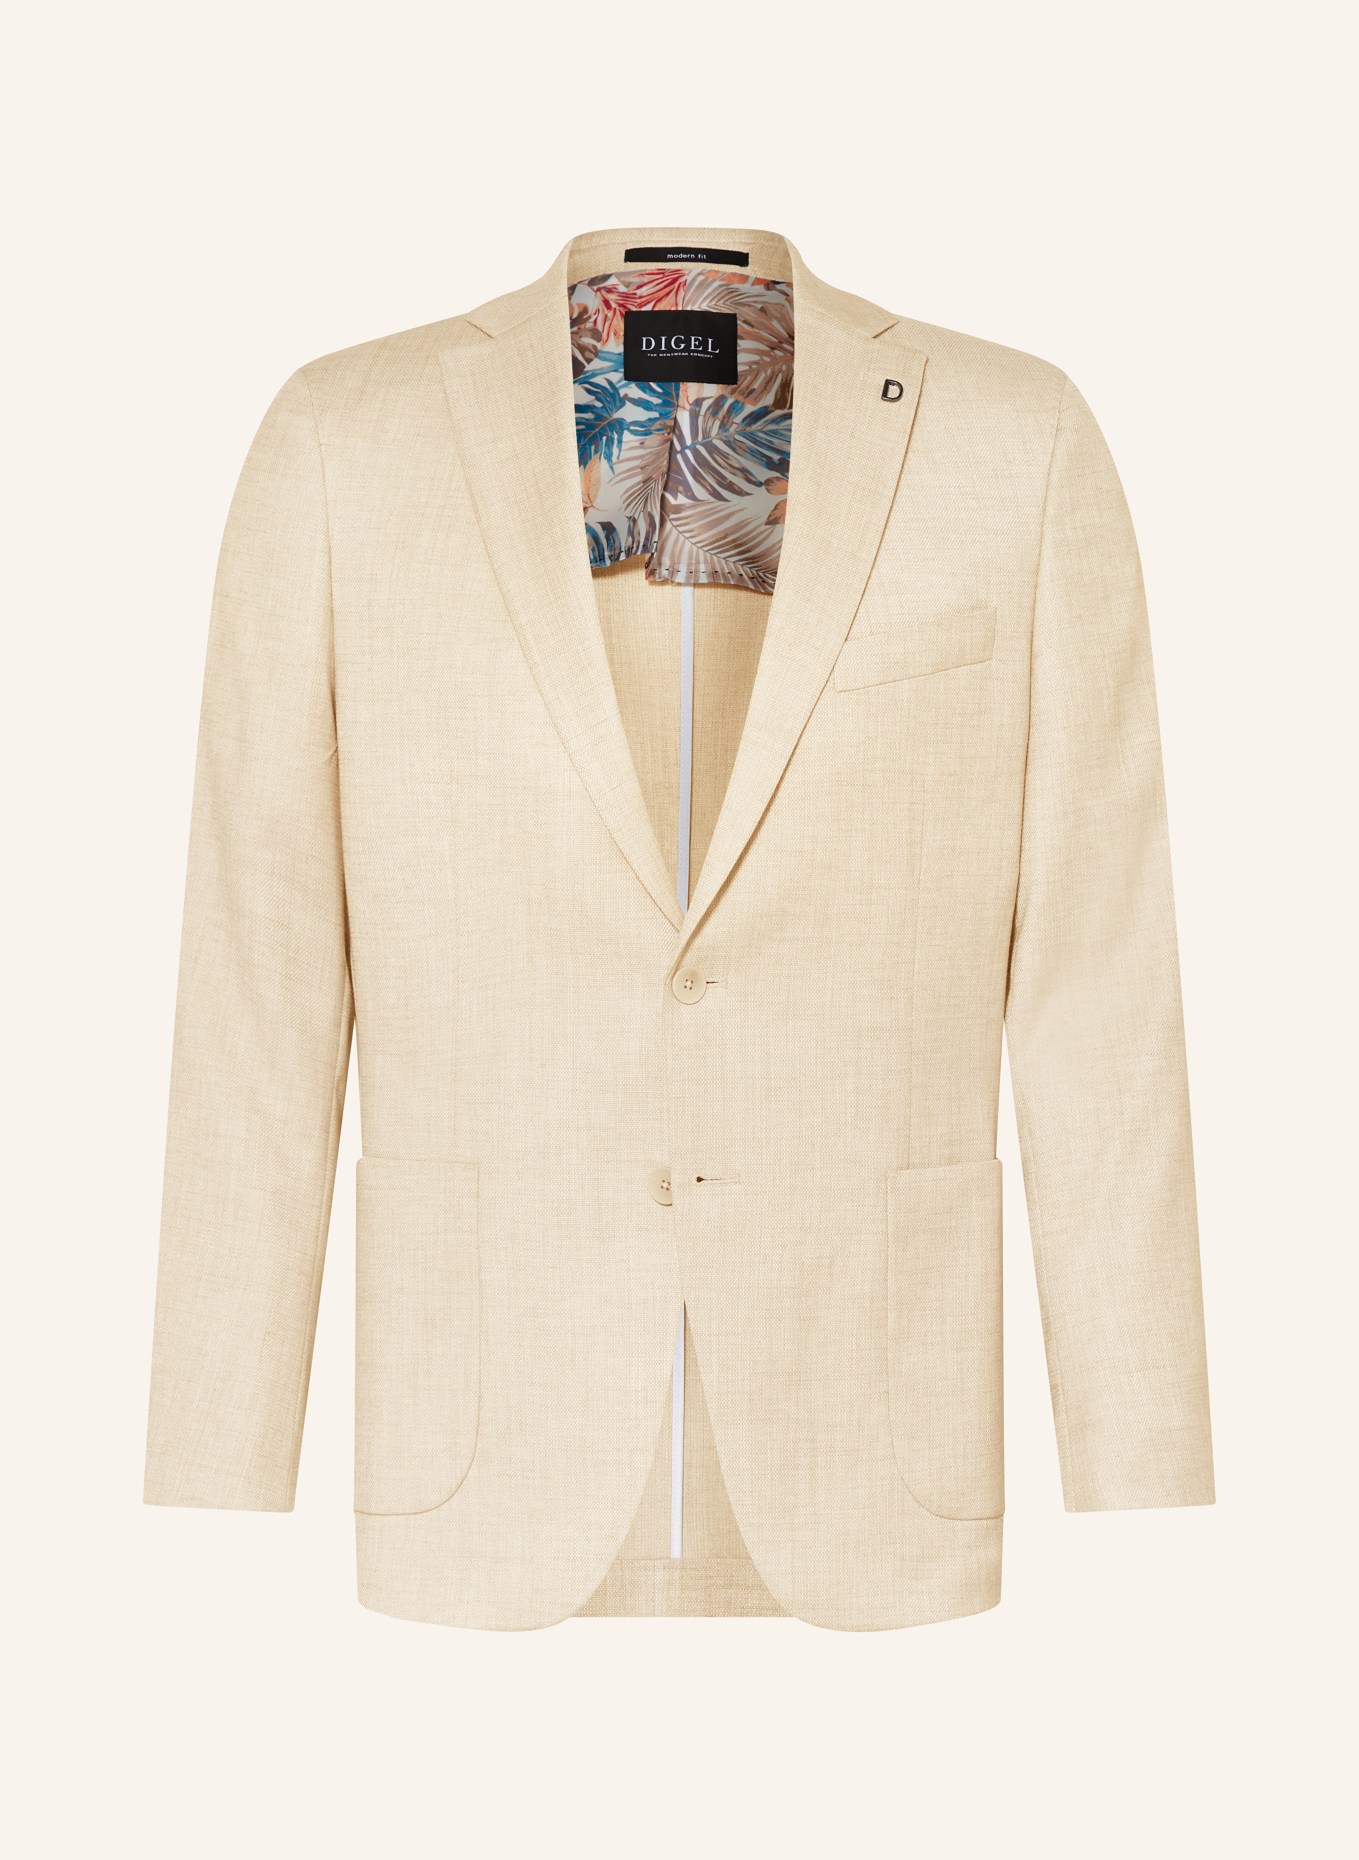 DIGEL Suit jacket EDWARD modern fit, Color: 76 BEIGE (Image 1)